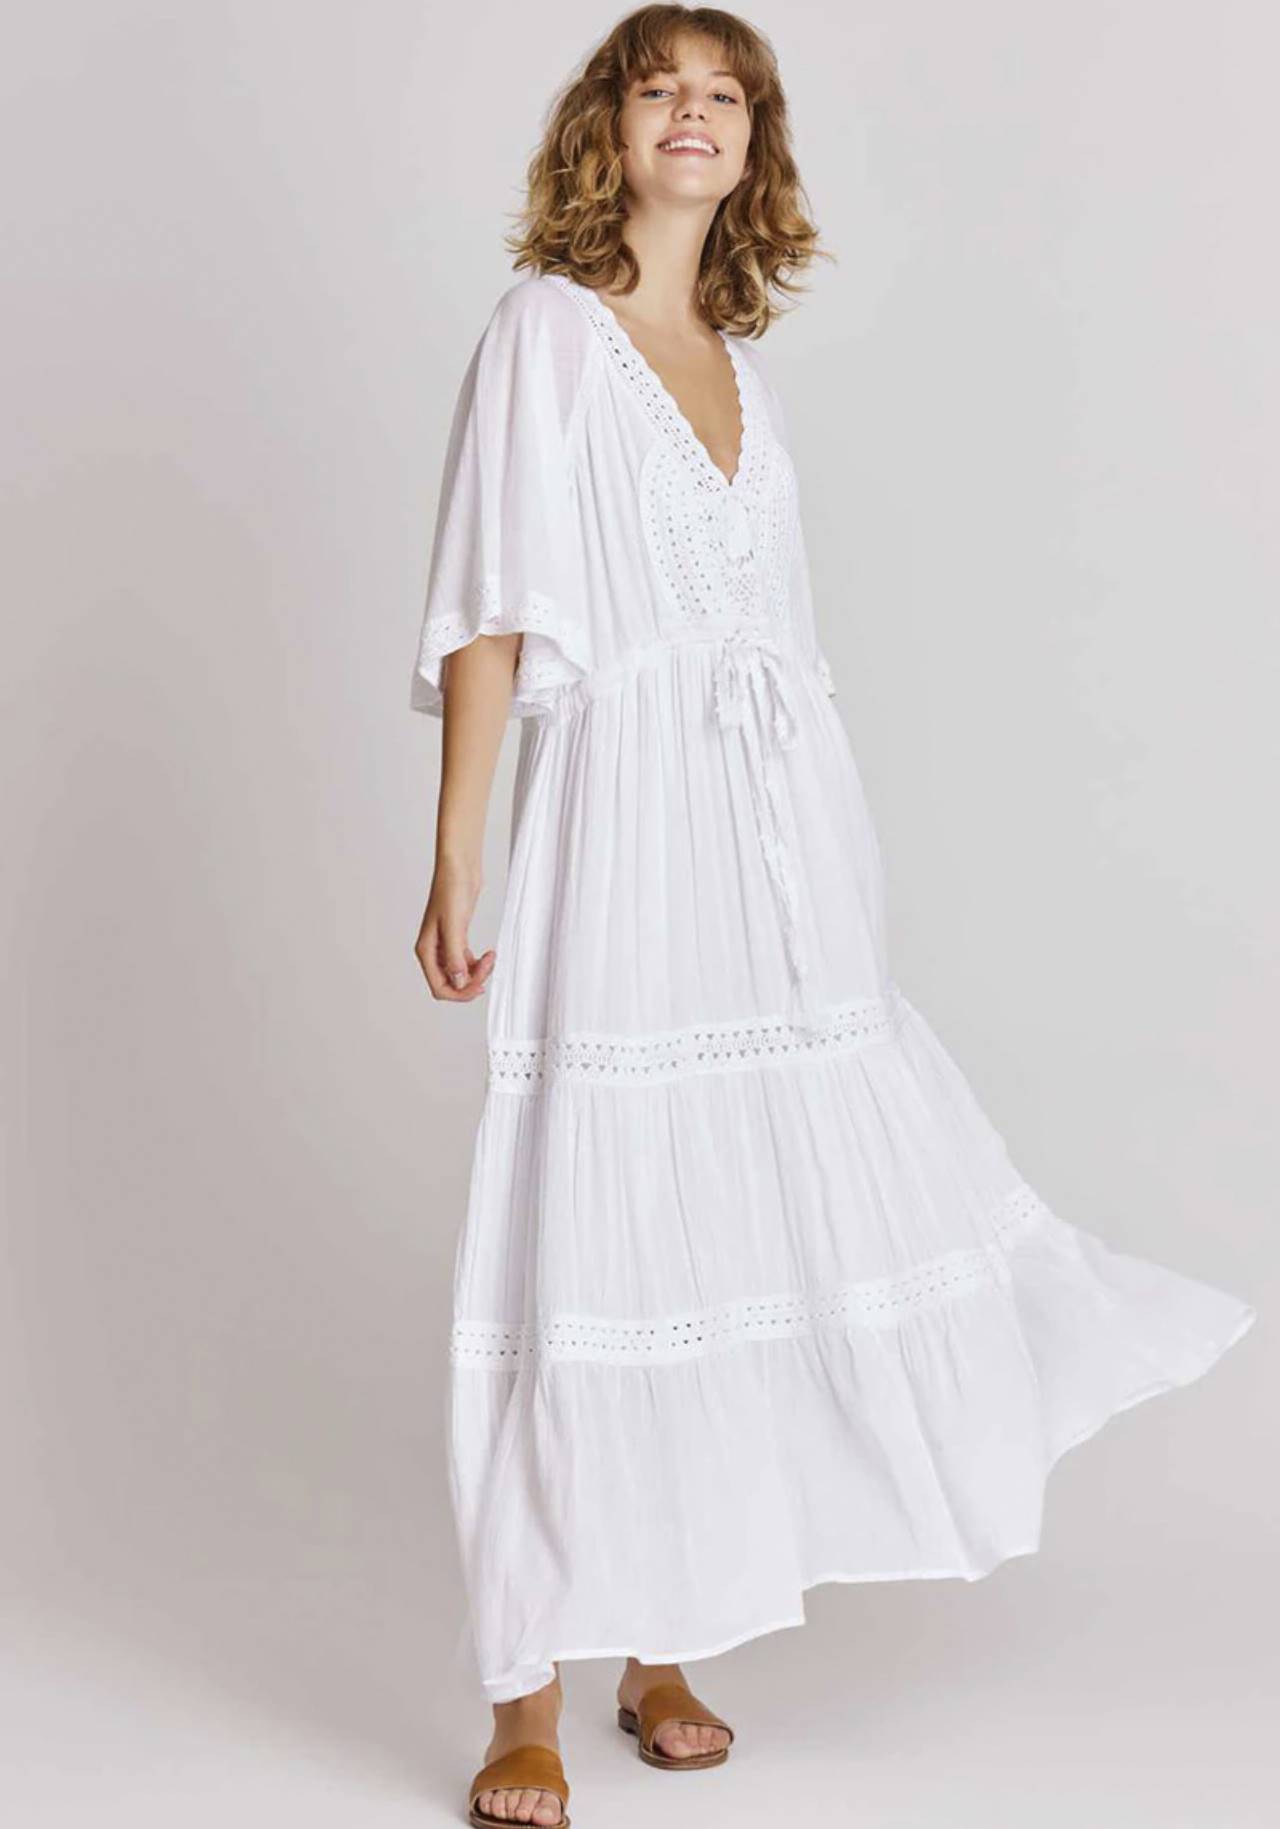 Rizado Contribución elegante 8 vestidos blancos rebajados en El Corte Inglés ideales para mujeres de 50  años